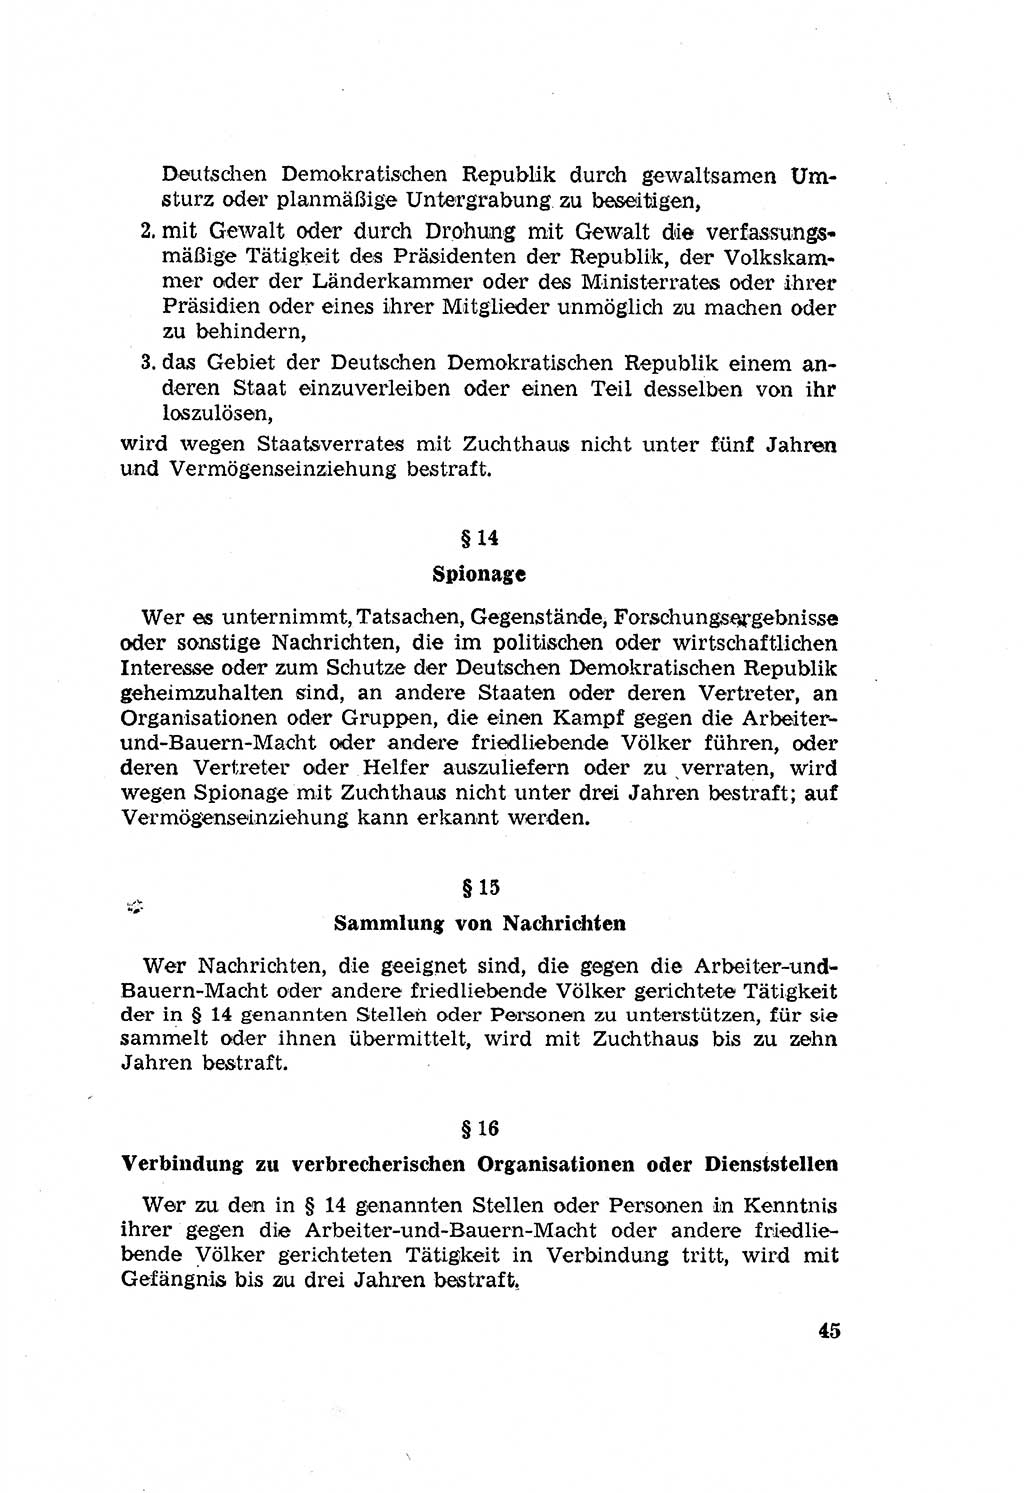 Zum Erlaß des Gesetzes zur Ergänzung des Strafgesetzbuches (StGB), Strafergänzungsgesetz (StEG) [Deutsche Demokratische Republik (DDR)] 1957, Seite 45 (StGB StEG DDR 1957, S. 45)